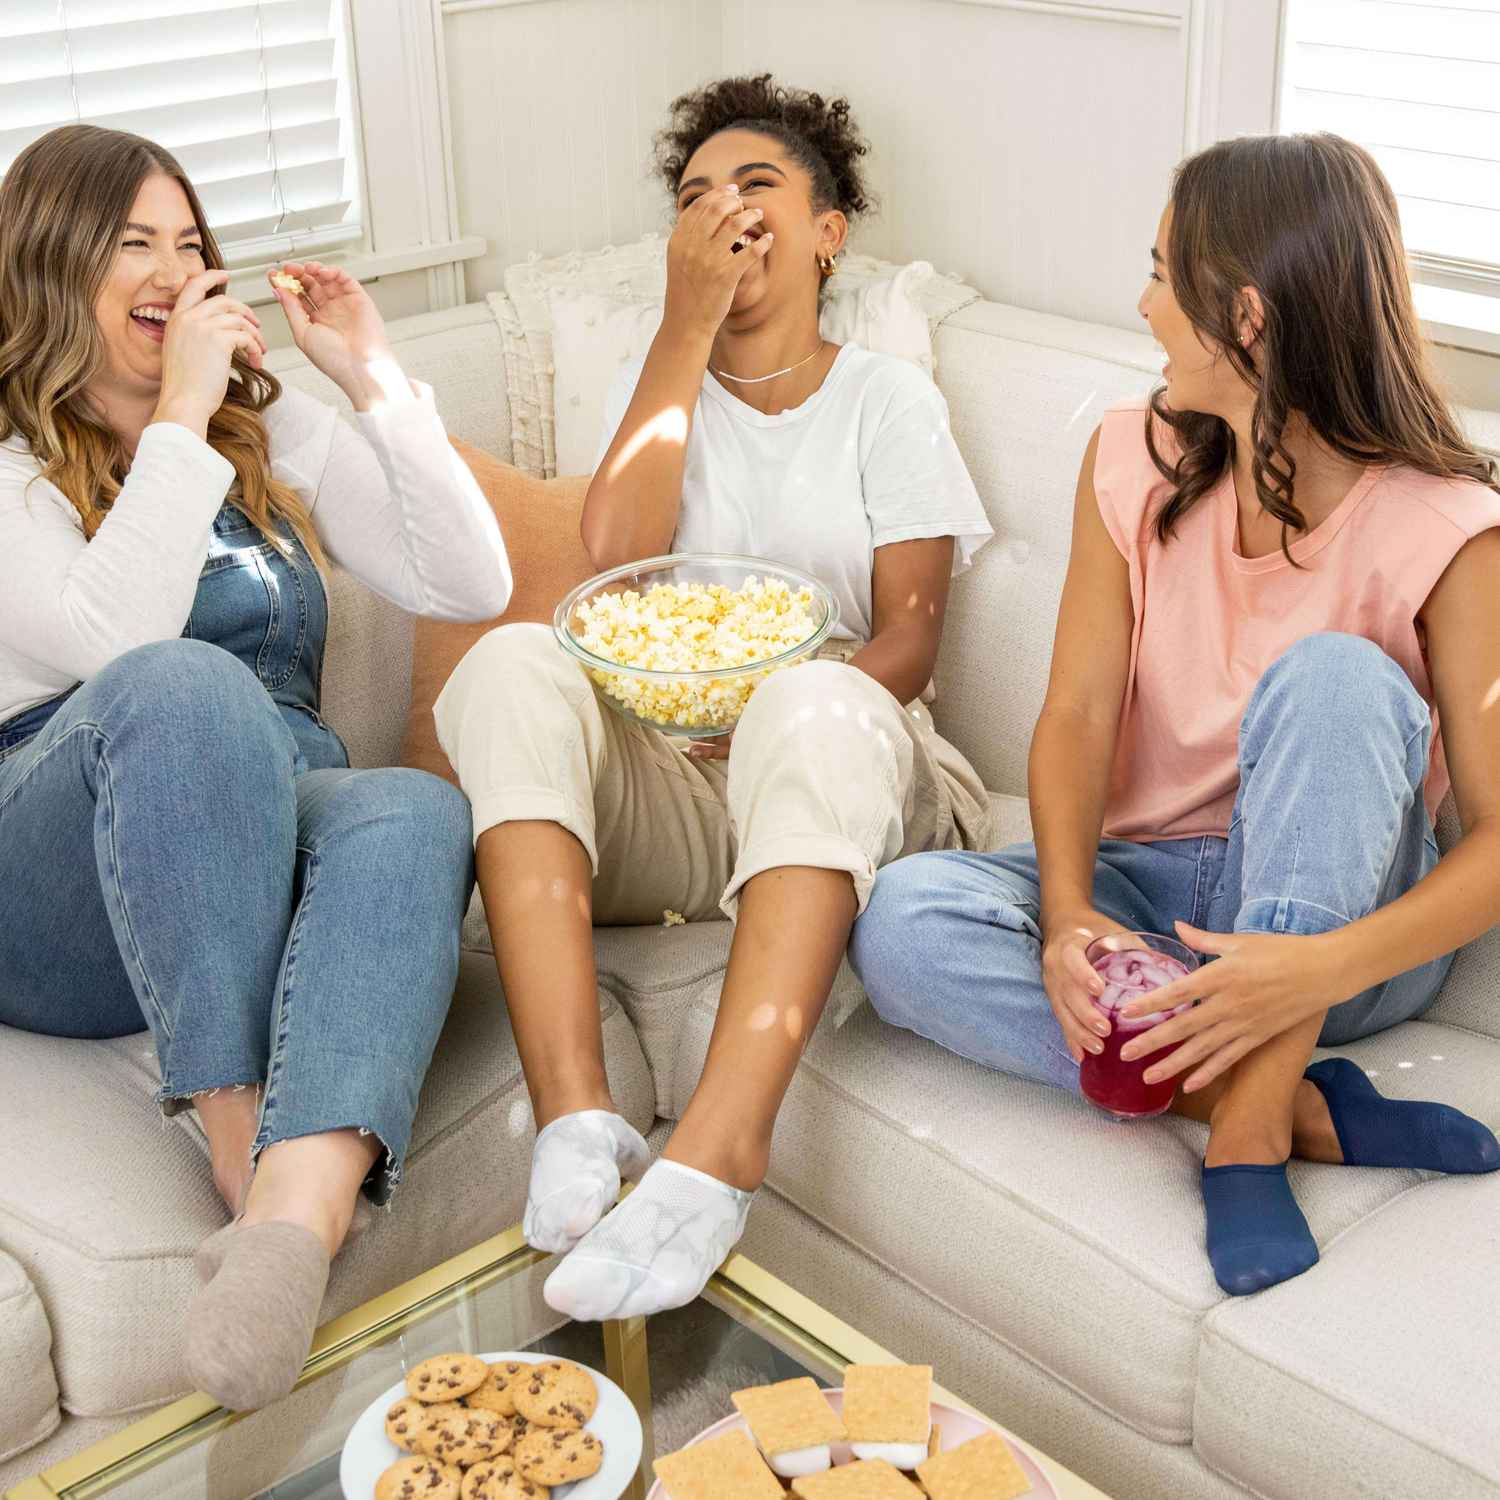 3 mujeres están sentadas en el sofá riendo y comiendo palomitas de maíz mientras usan calcetines